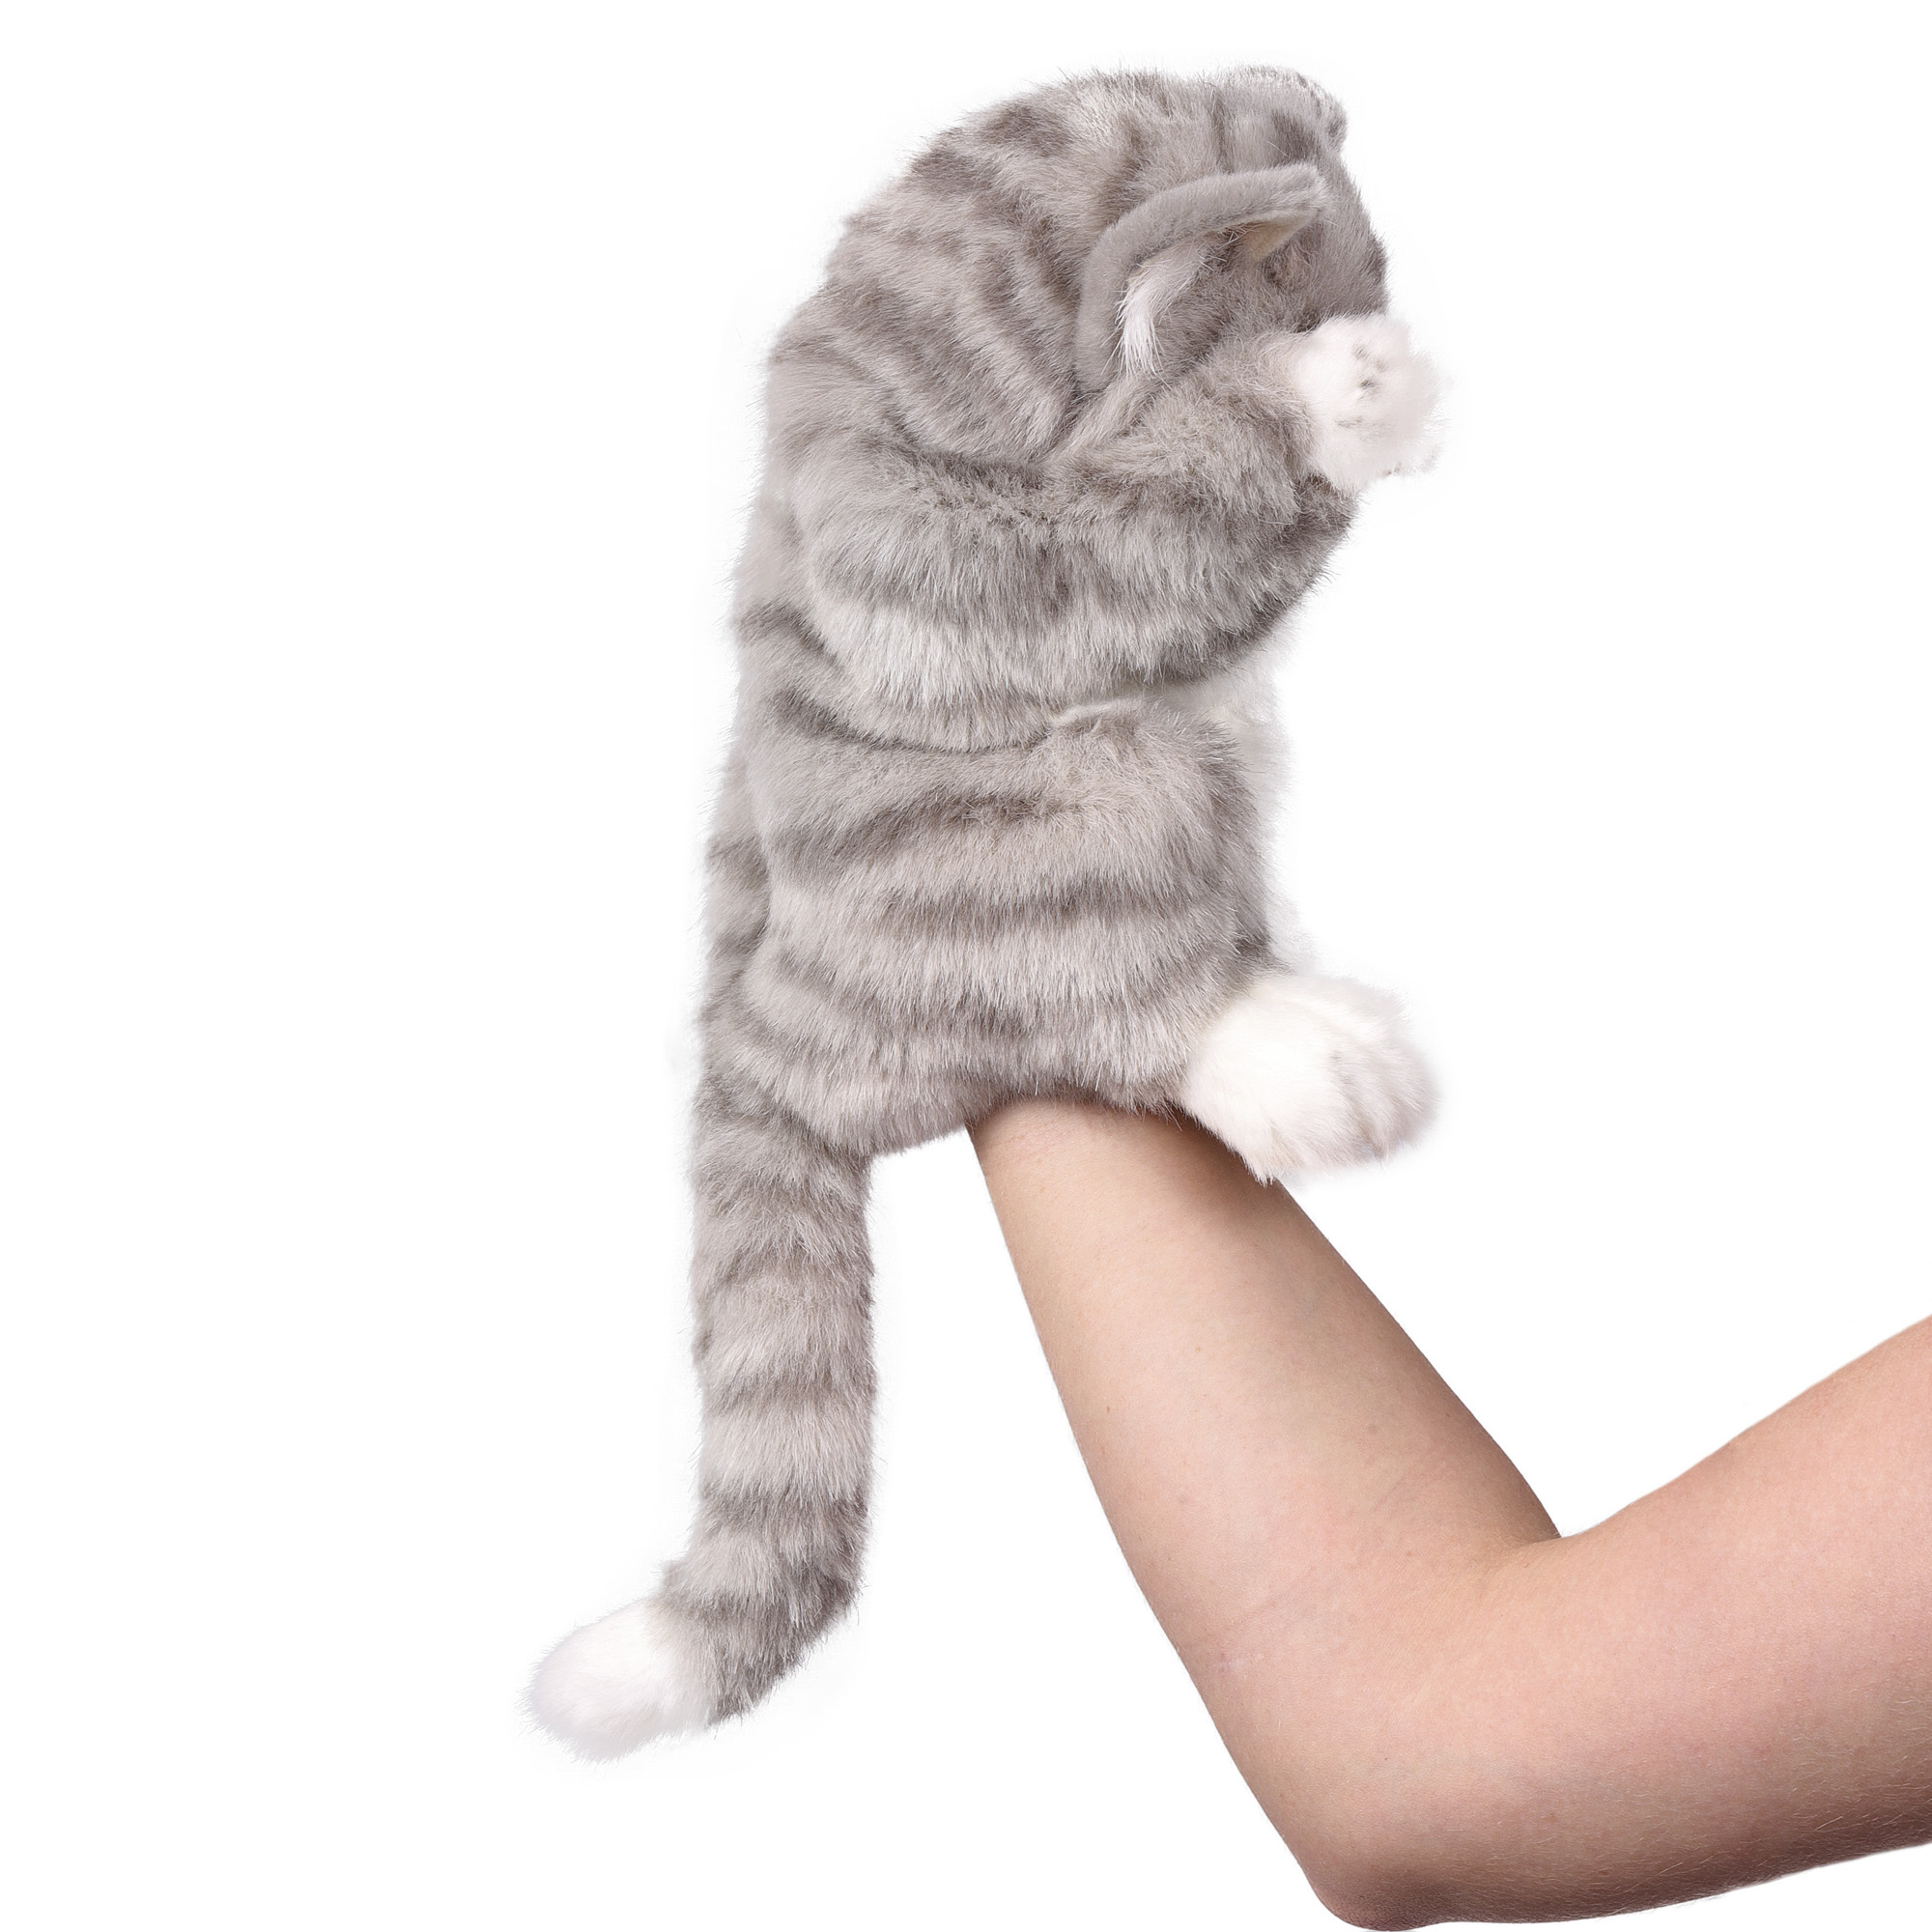 Реалистичная мягкая игрушка HANSA Кошка игрушка на руку 30 см - фото 6